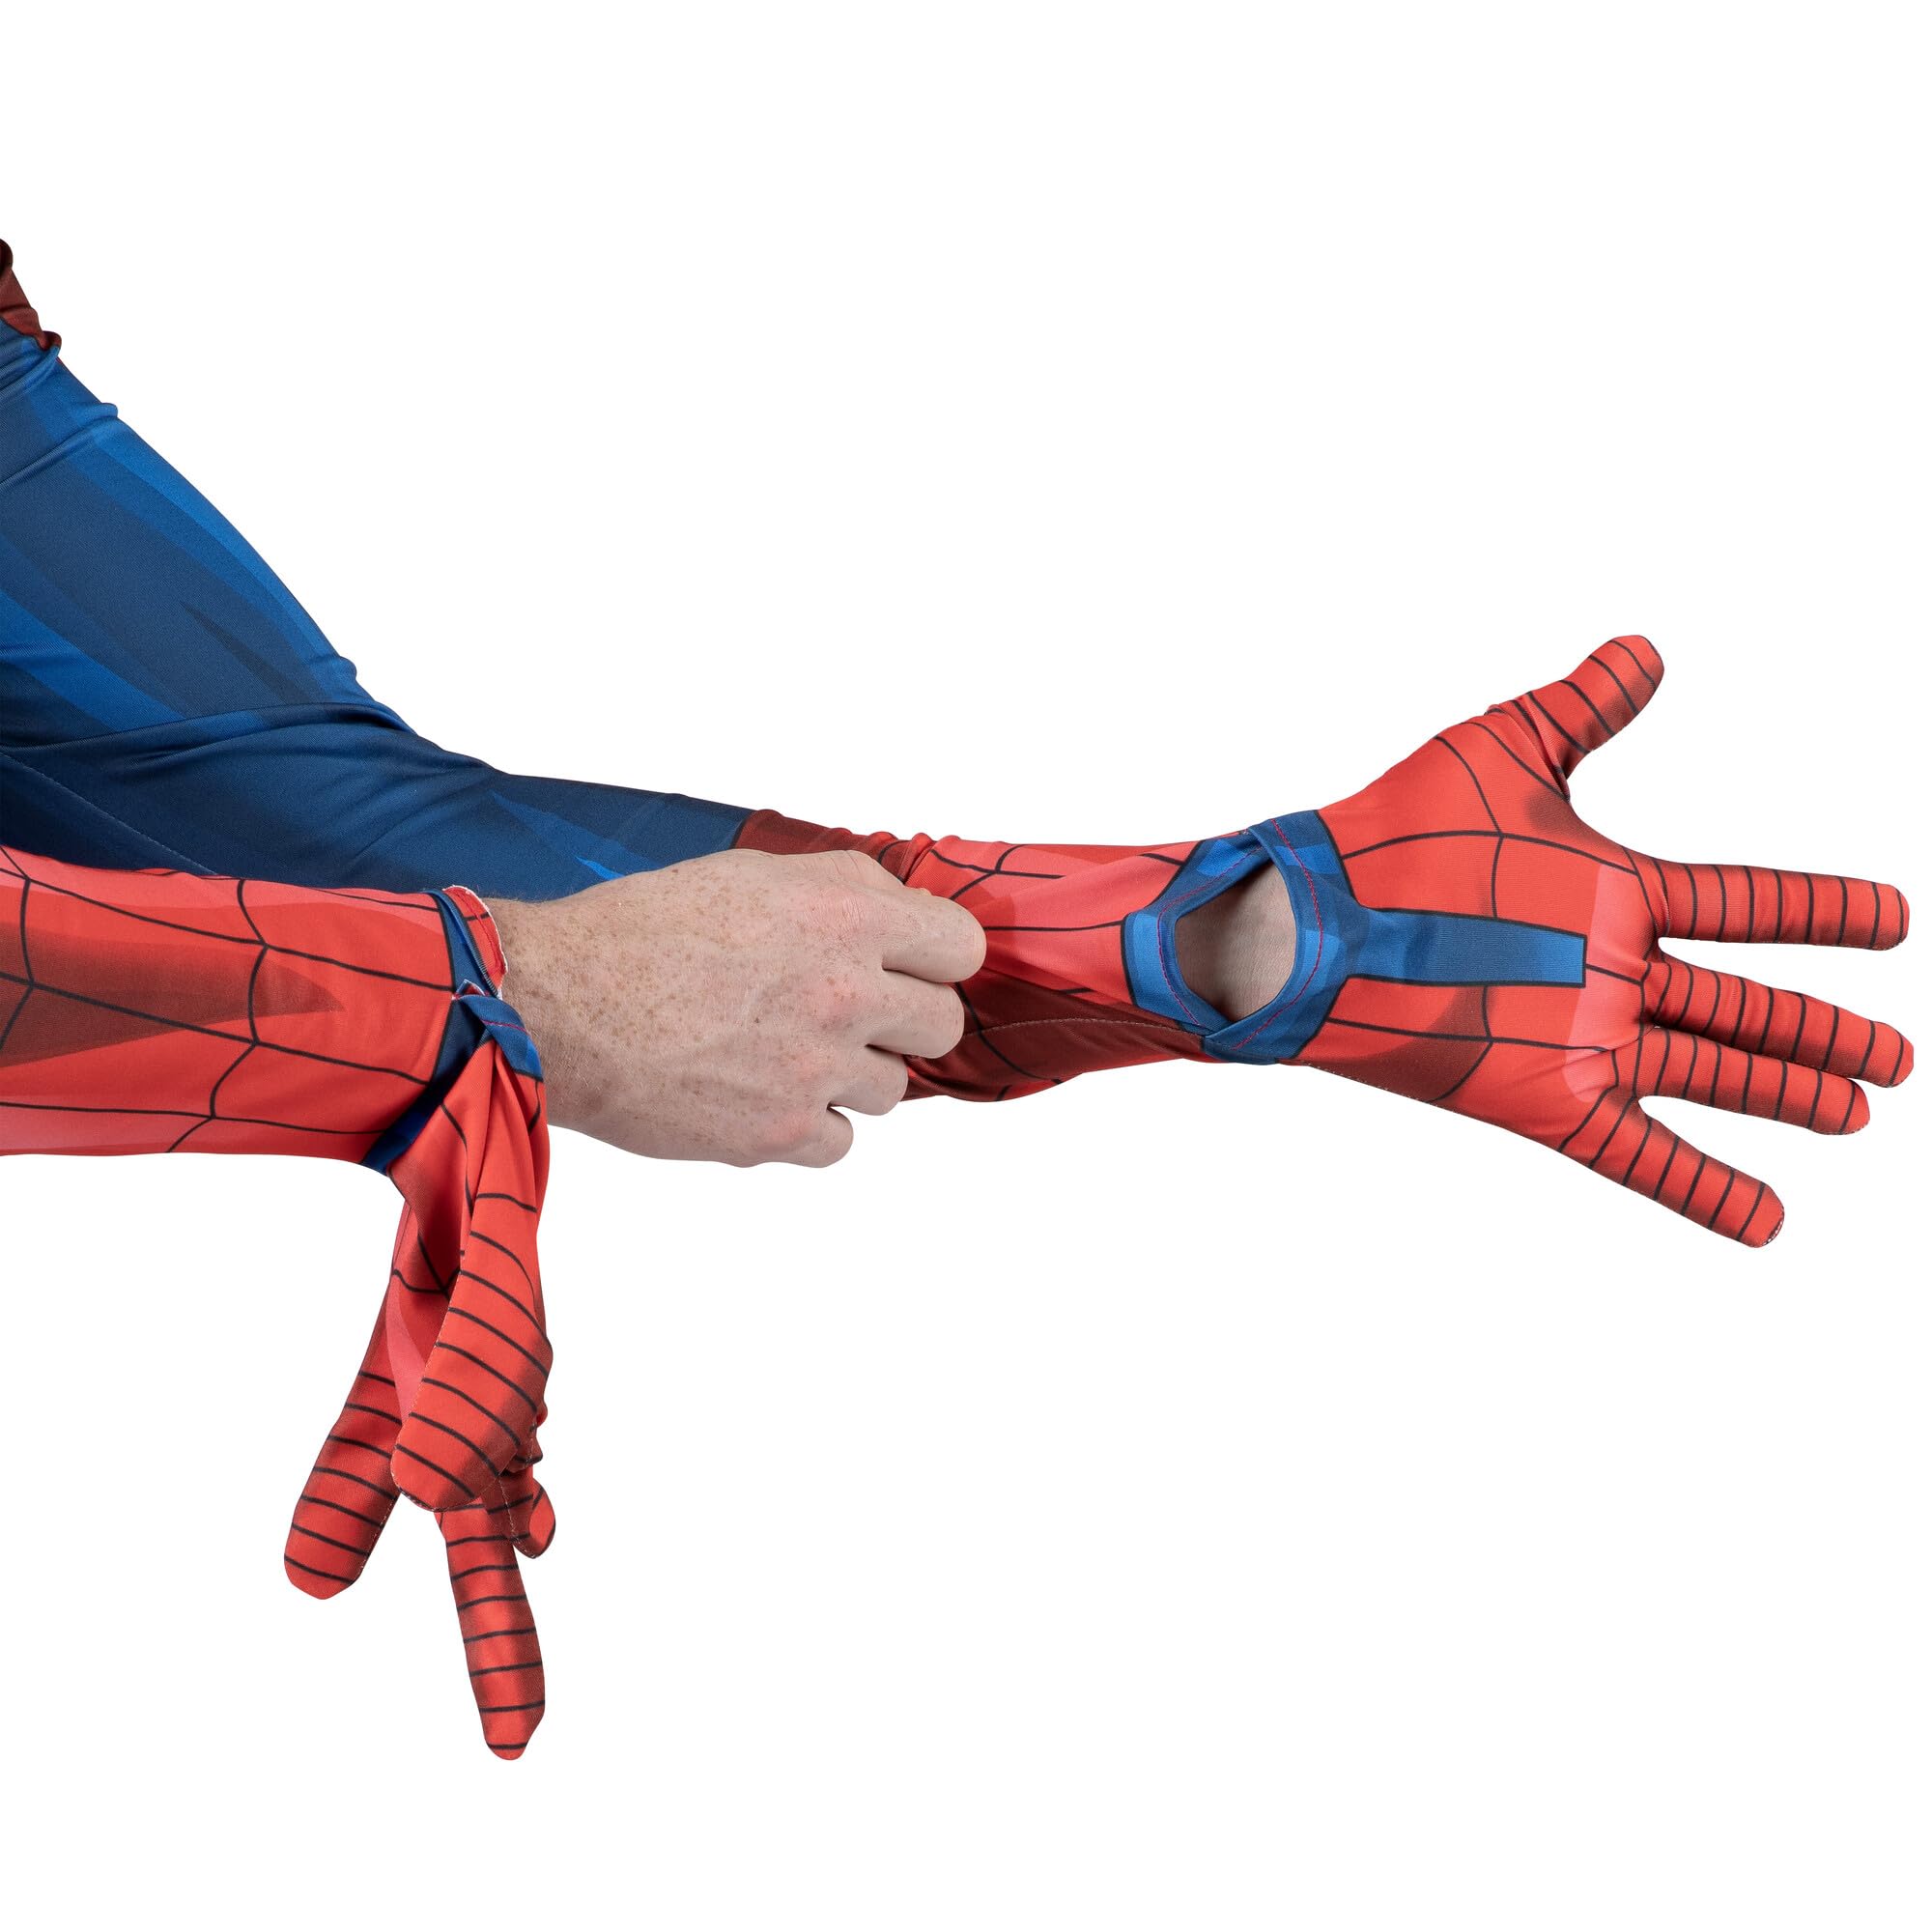 Marvel: Spider-Man Adult Deluxe Zentai Suit